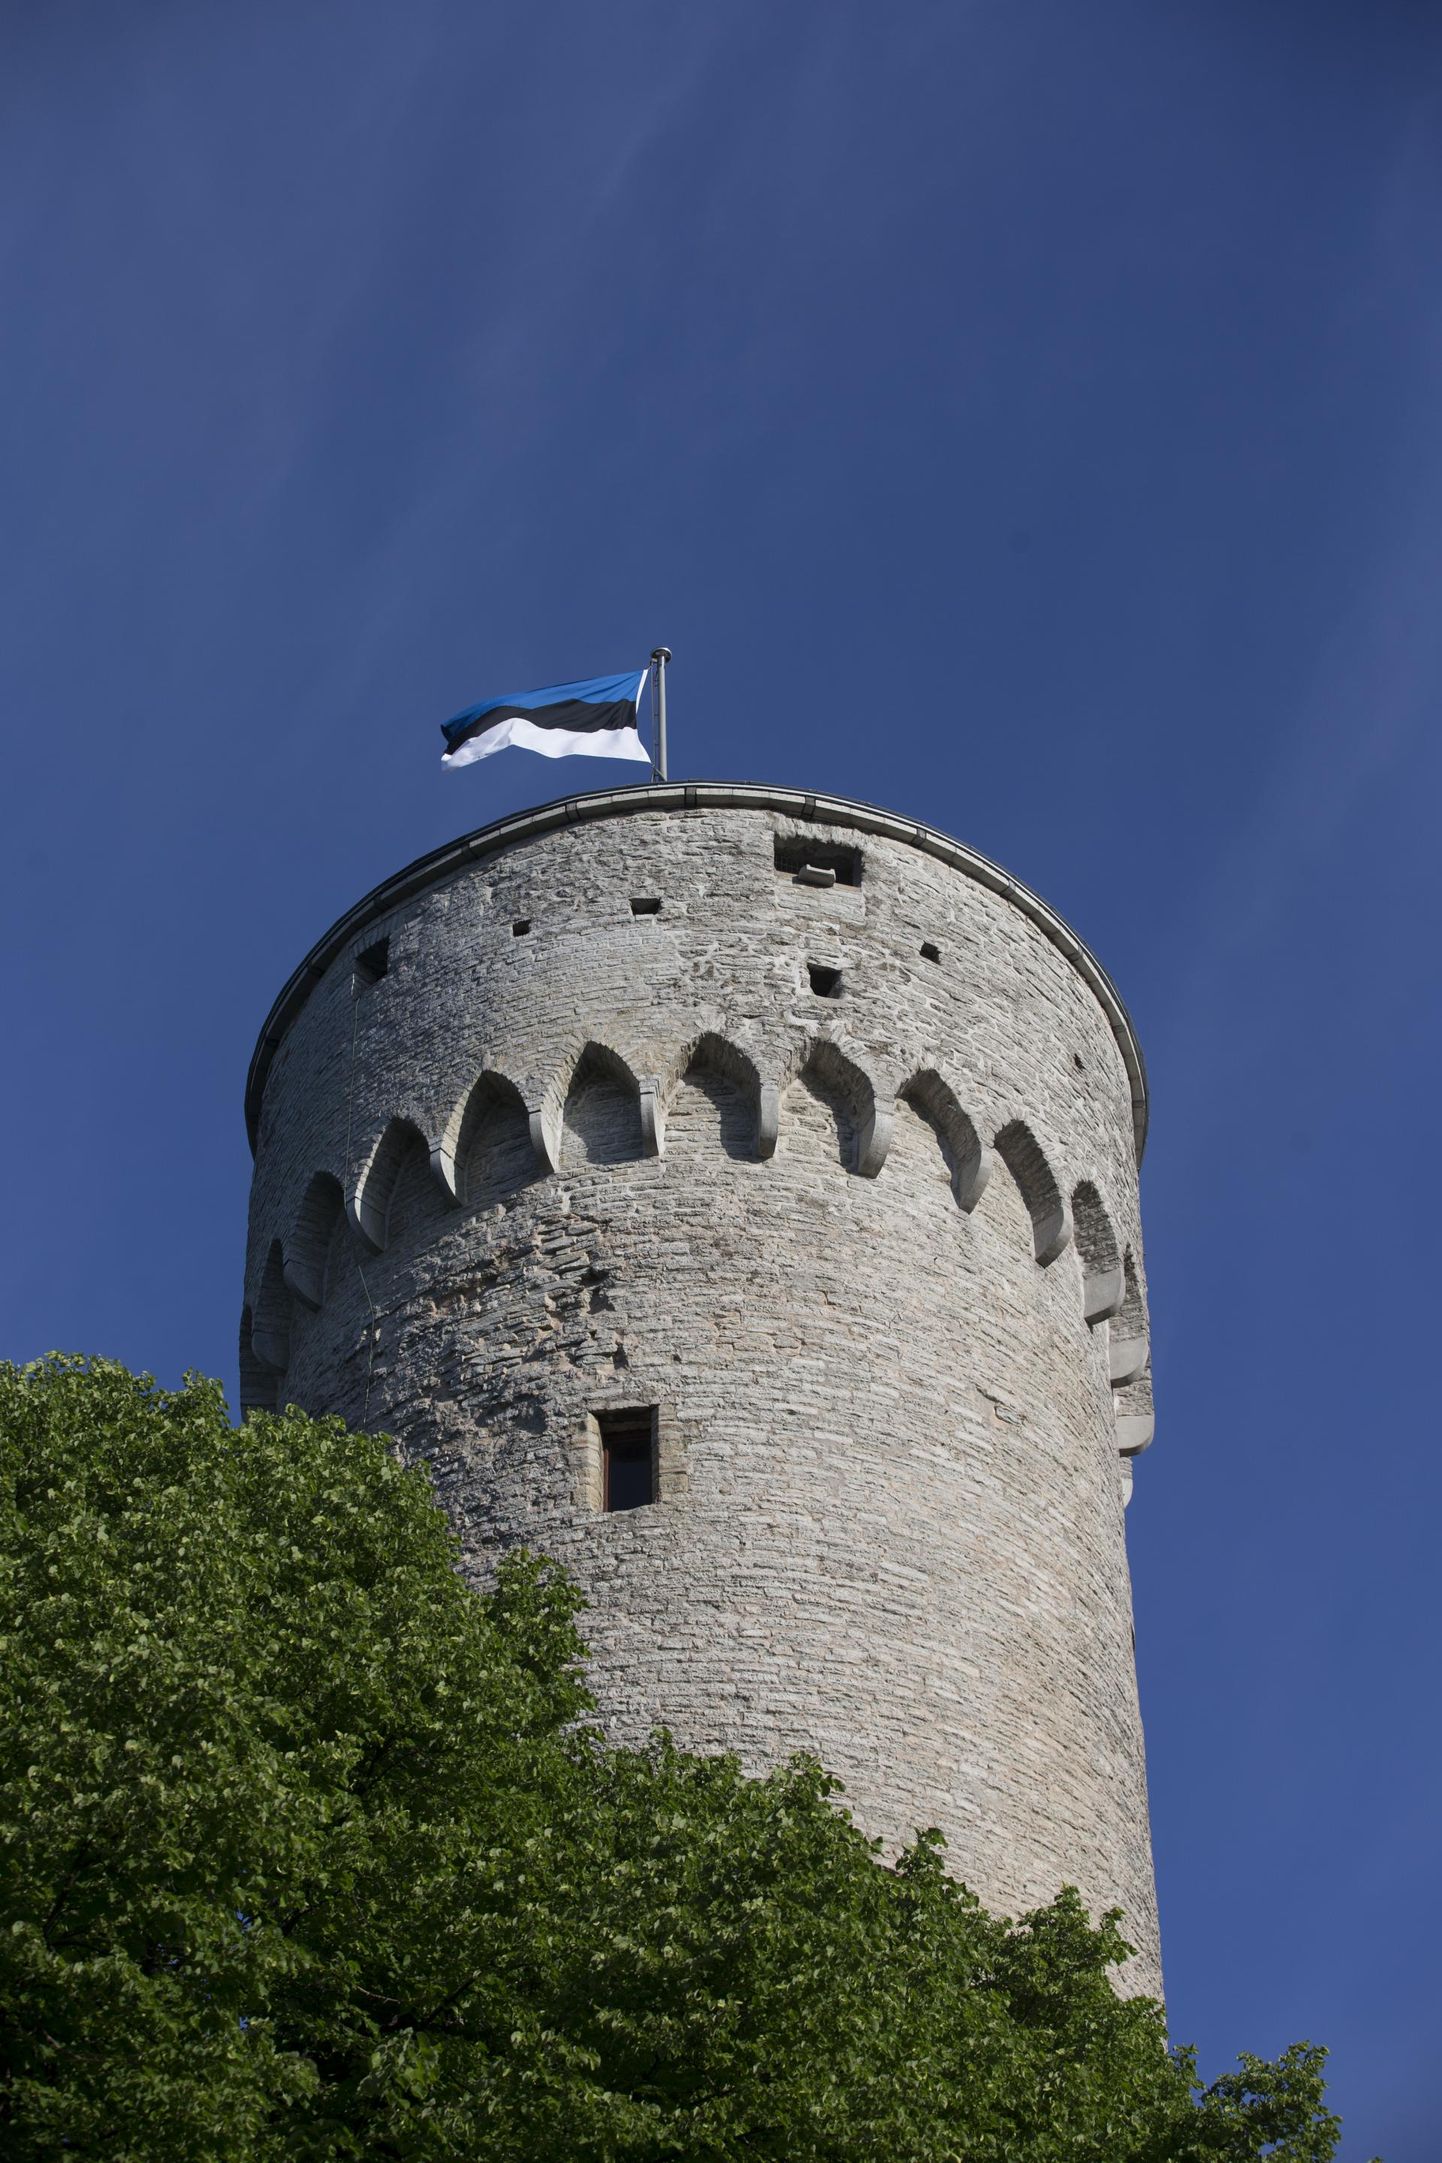 Eesti lipu päeval pannakse trikoloorid lehvima.